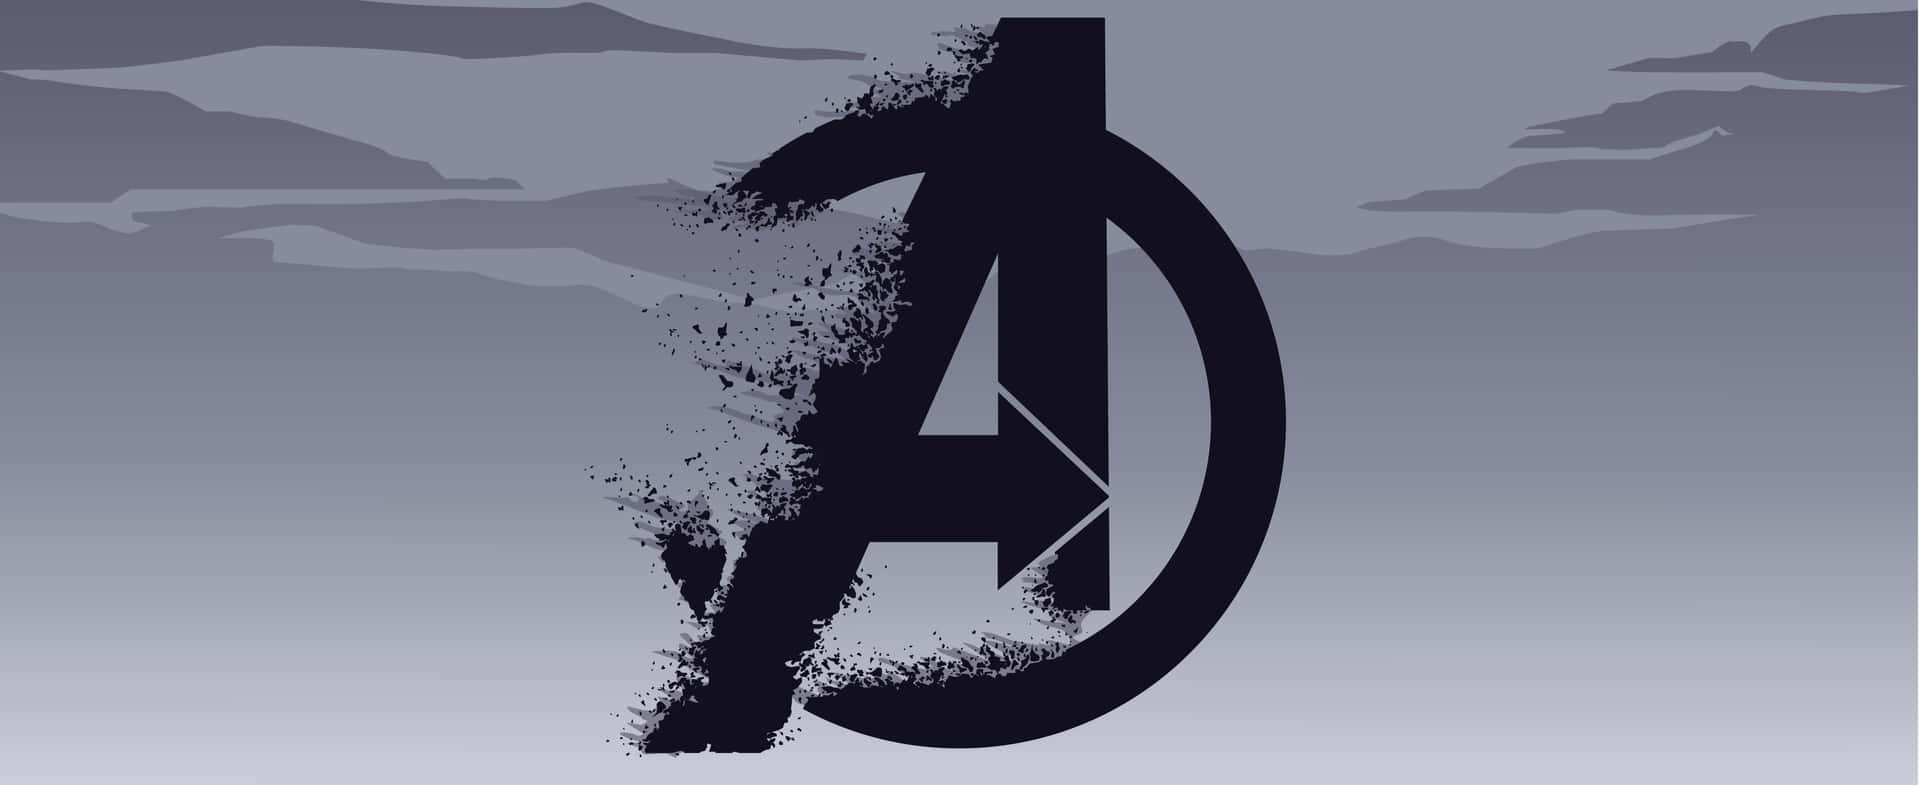 Avengers Logo Disintegration Effect Background